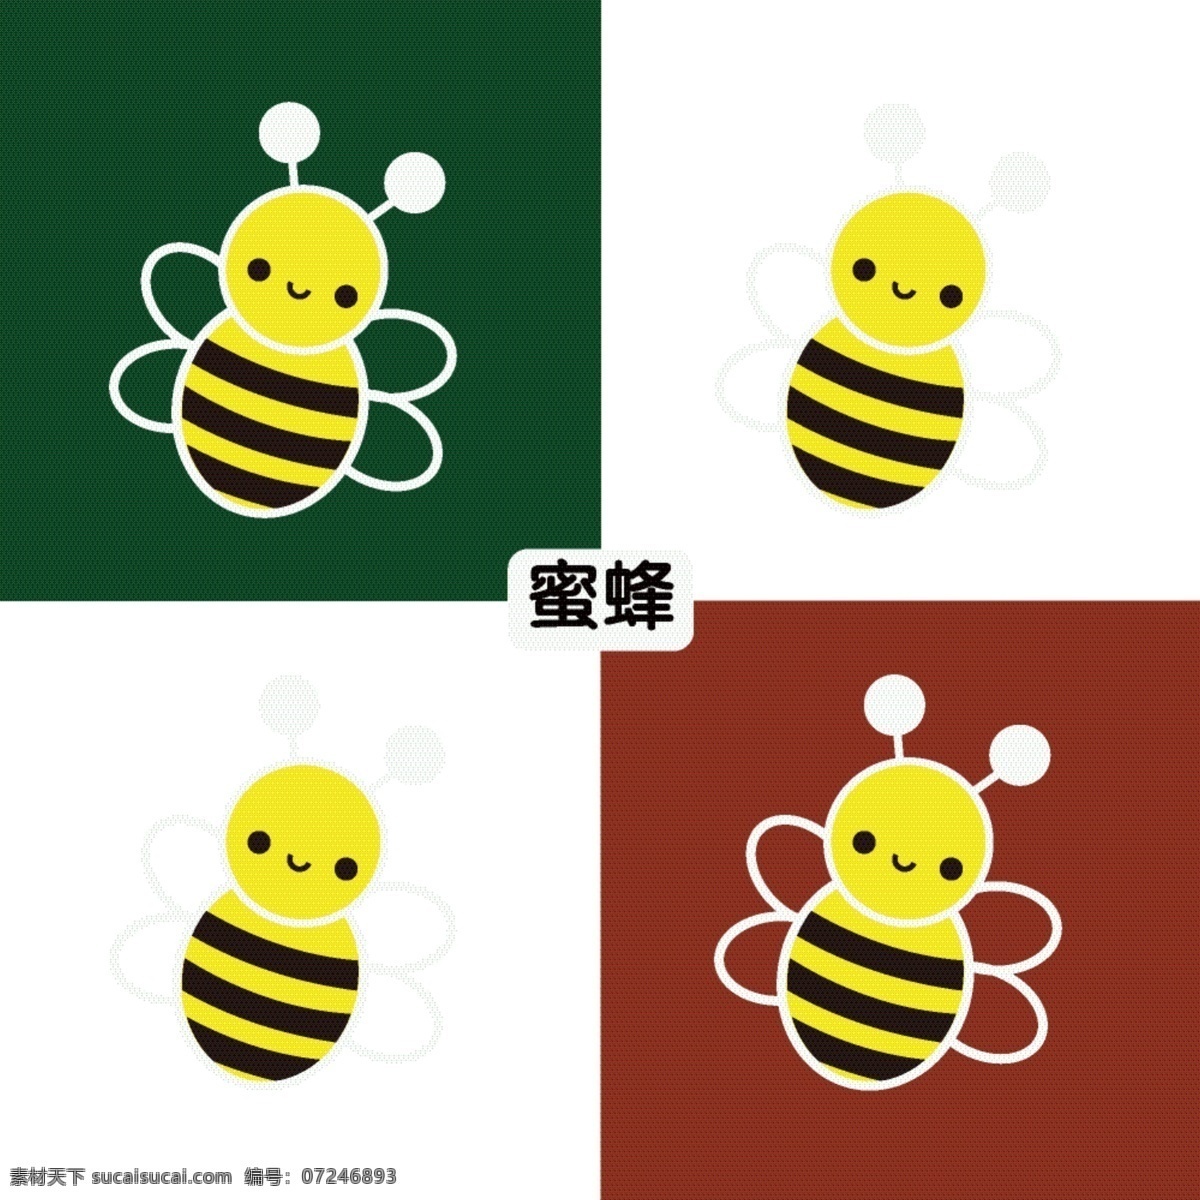 小蜜蜂 蜜蜂 黄蜂 大黄蜂 矢量蜜蜂 小动物 矢量动物 动物卡片 儿童学习卡片